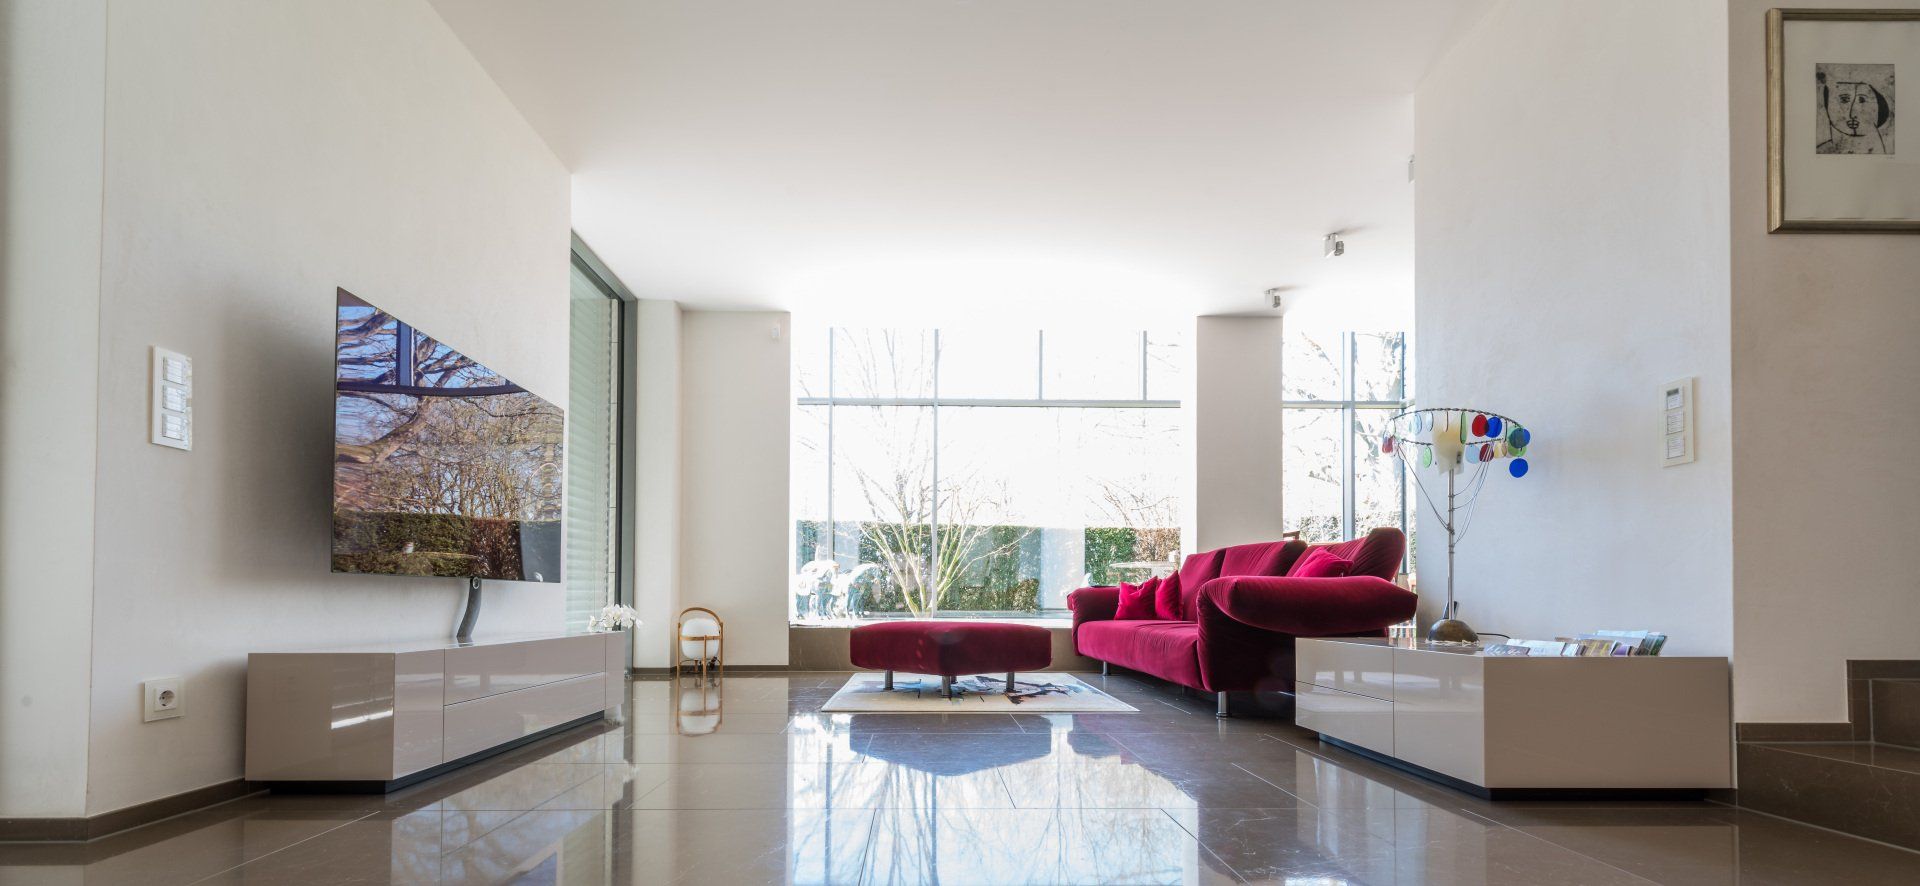 Wohnzimmer mit zwei Hochglanz-Möbeln der Schreinerei BLEIER Lebensräume: TV-Lowboard, Lowboard, Sofa, Marmorfussboden